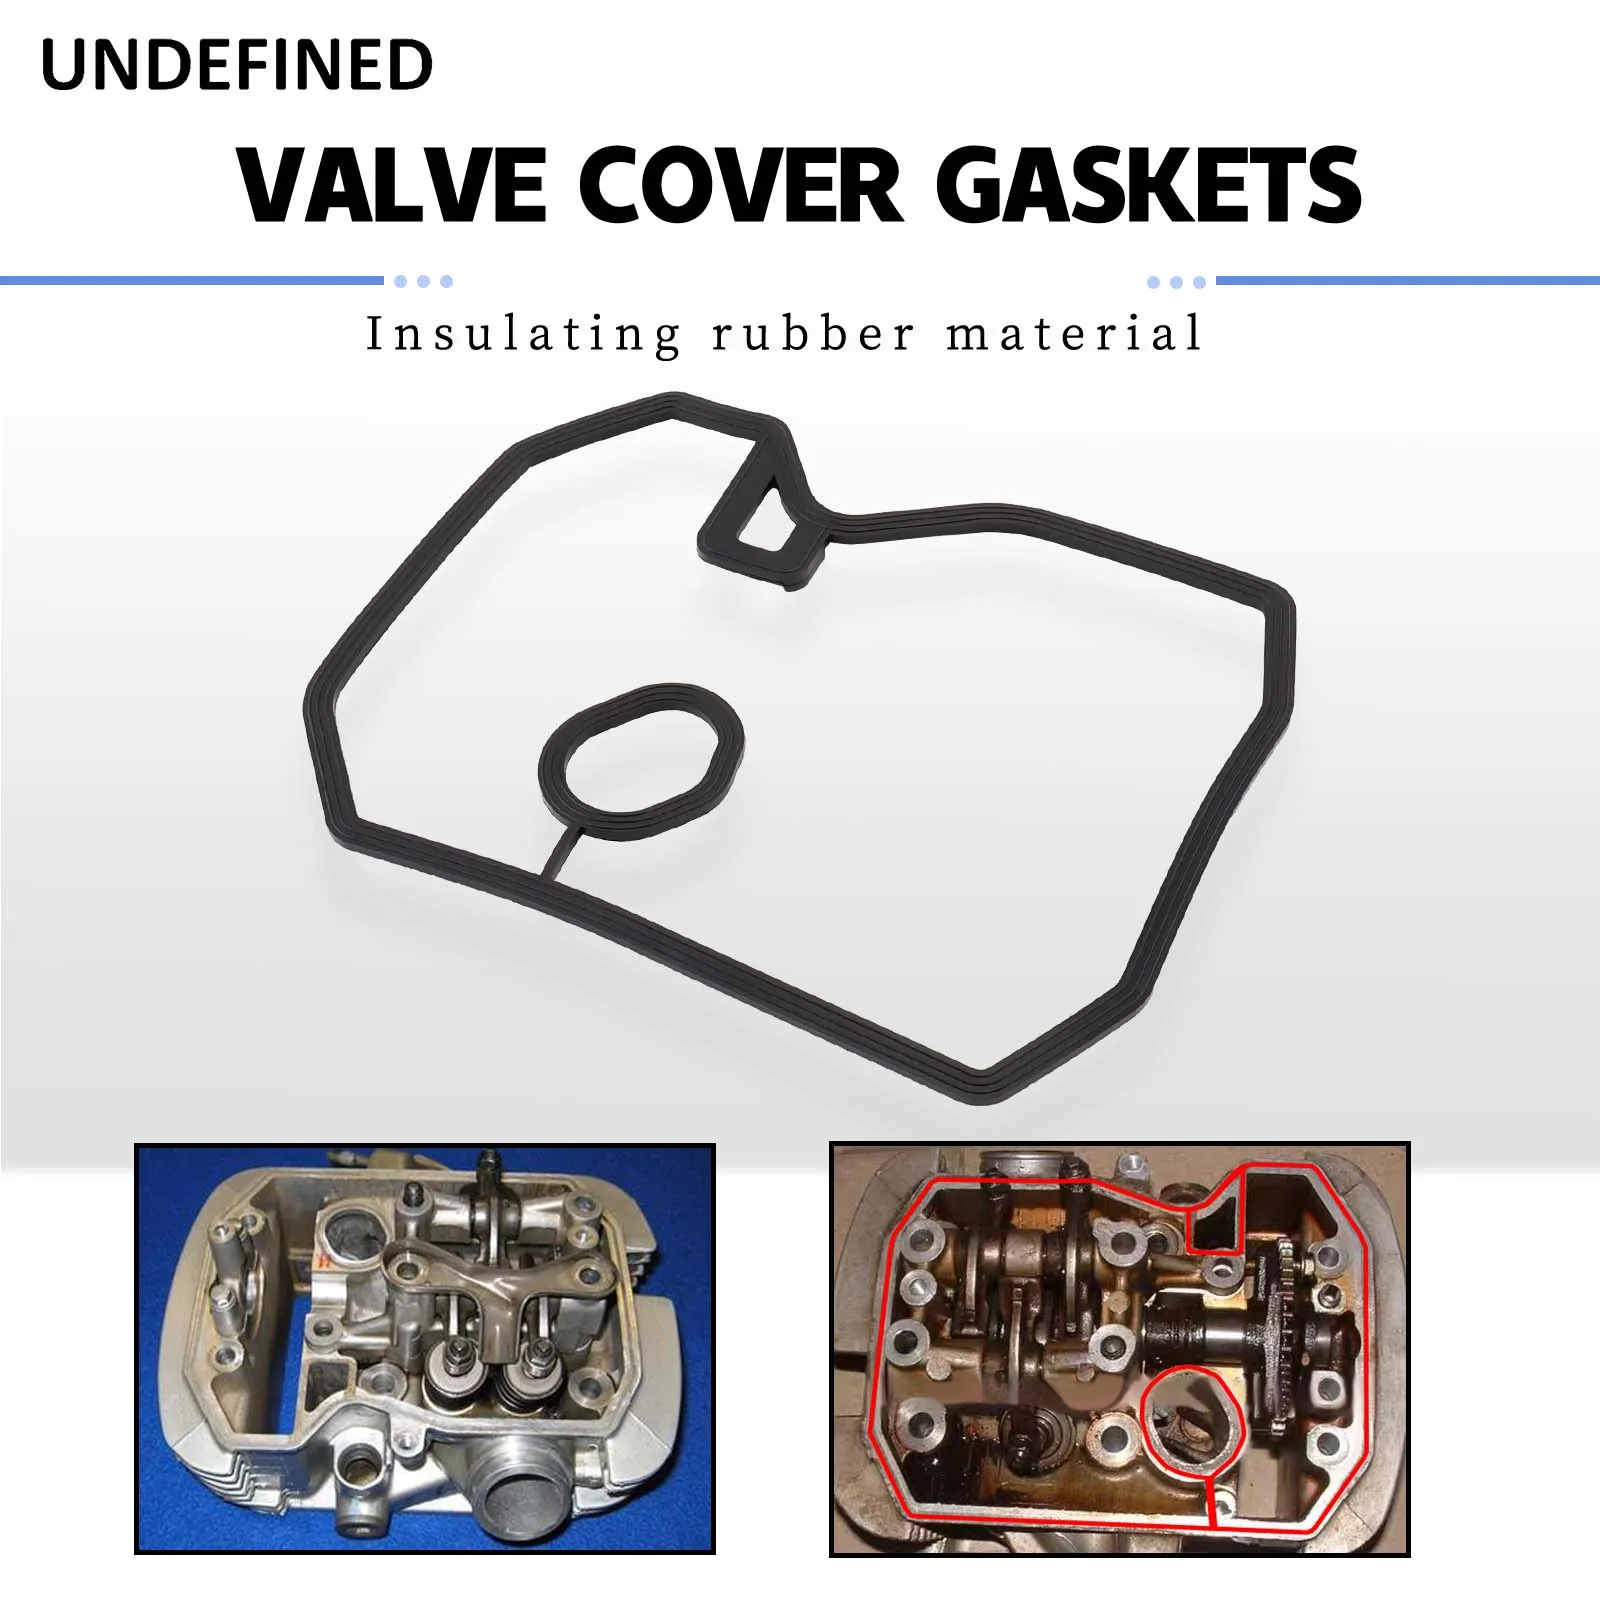 

Cylinder Head Cover Gasket for Honda Shadow VT600 VT600C VT750C VT750 VT 600 750 C CD XLV650 XRV750 12391-MF5-750 Motor Parts